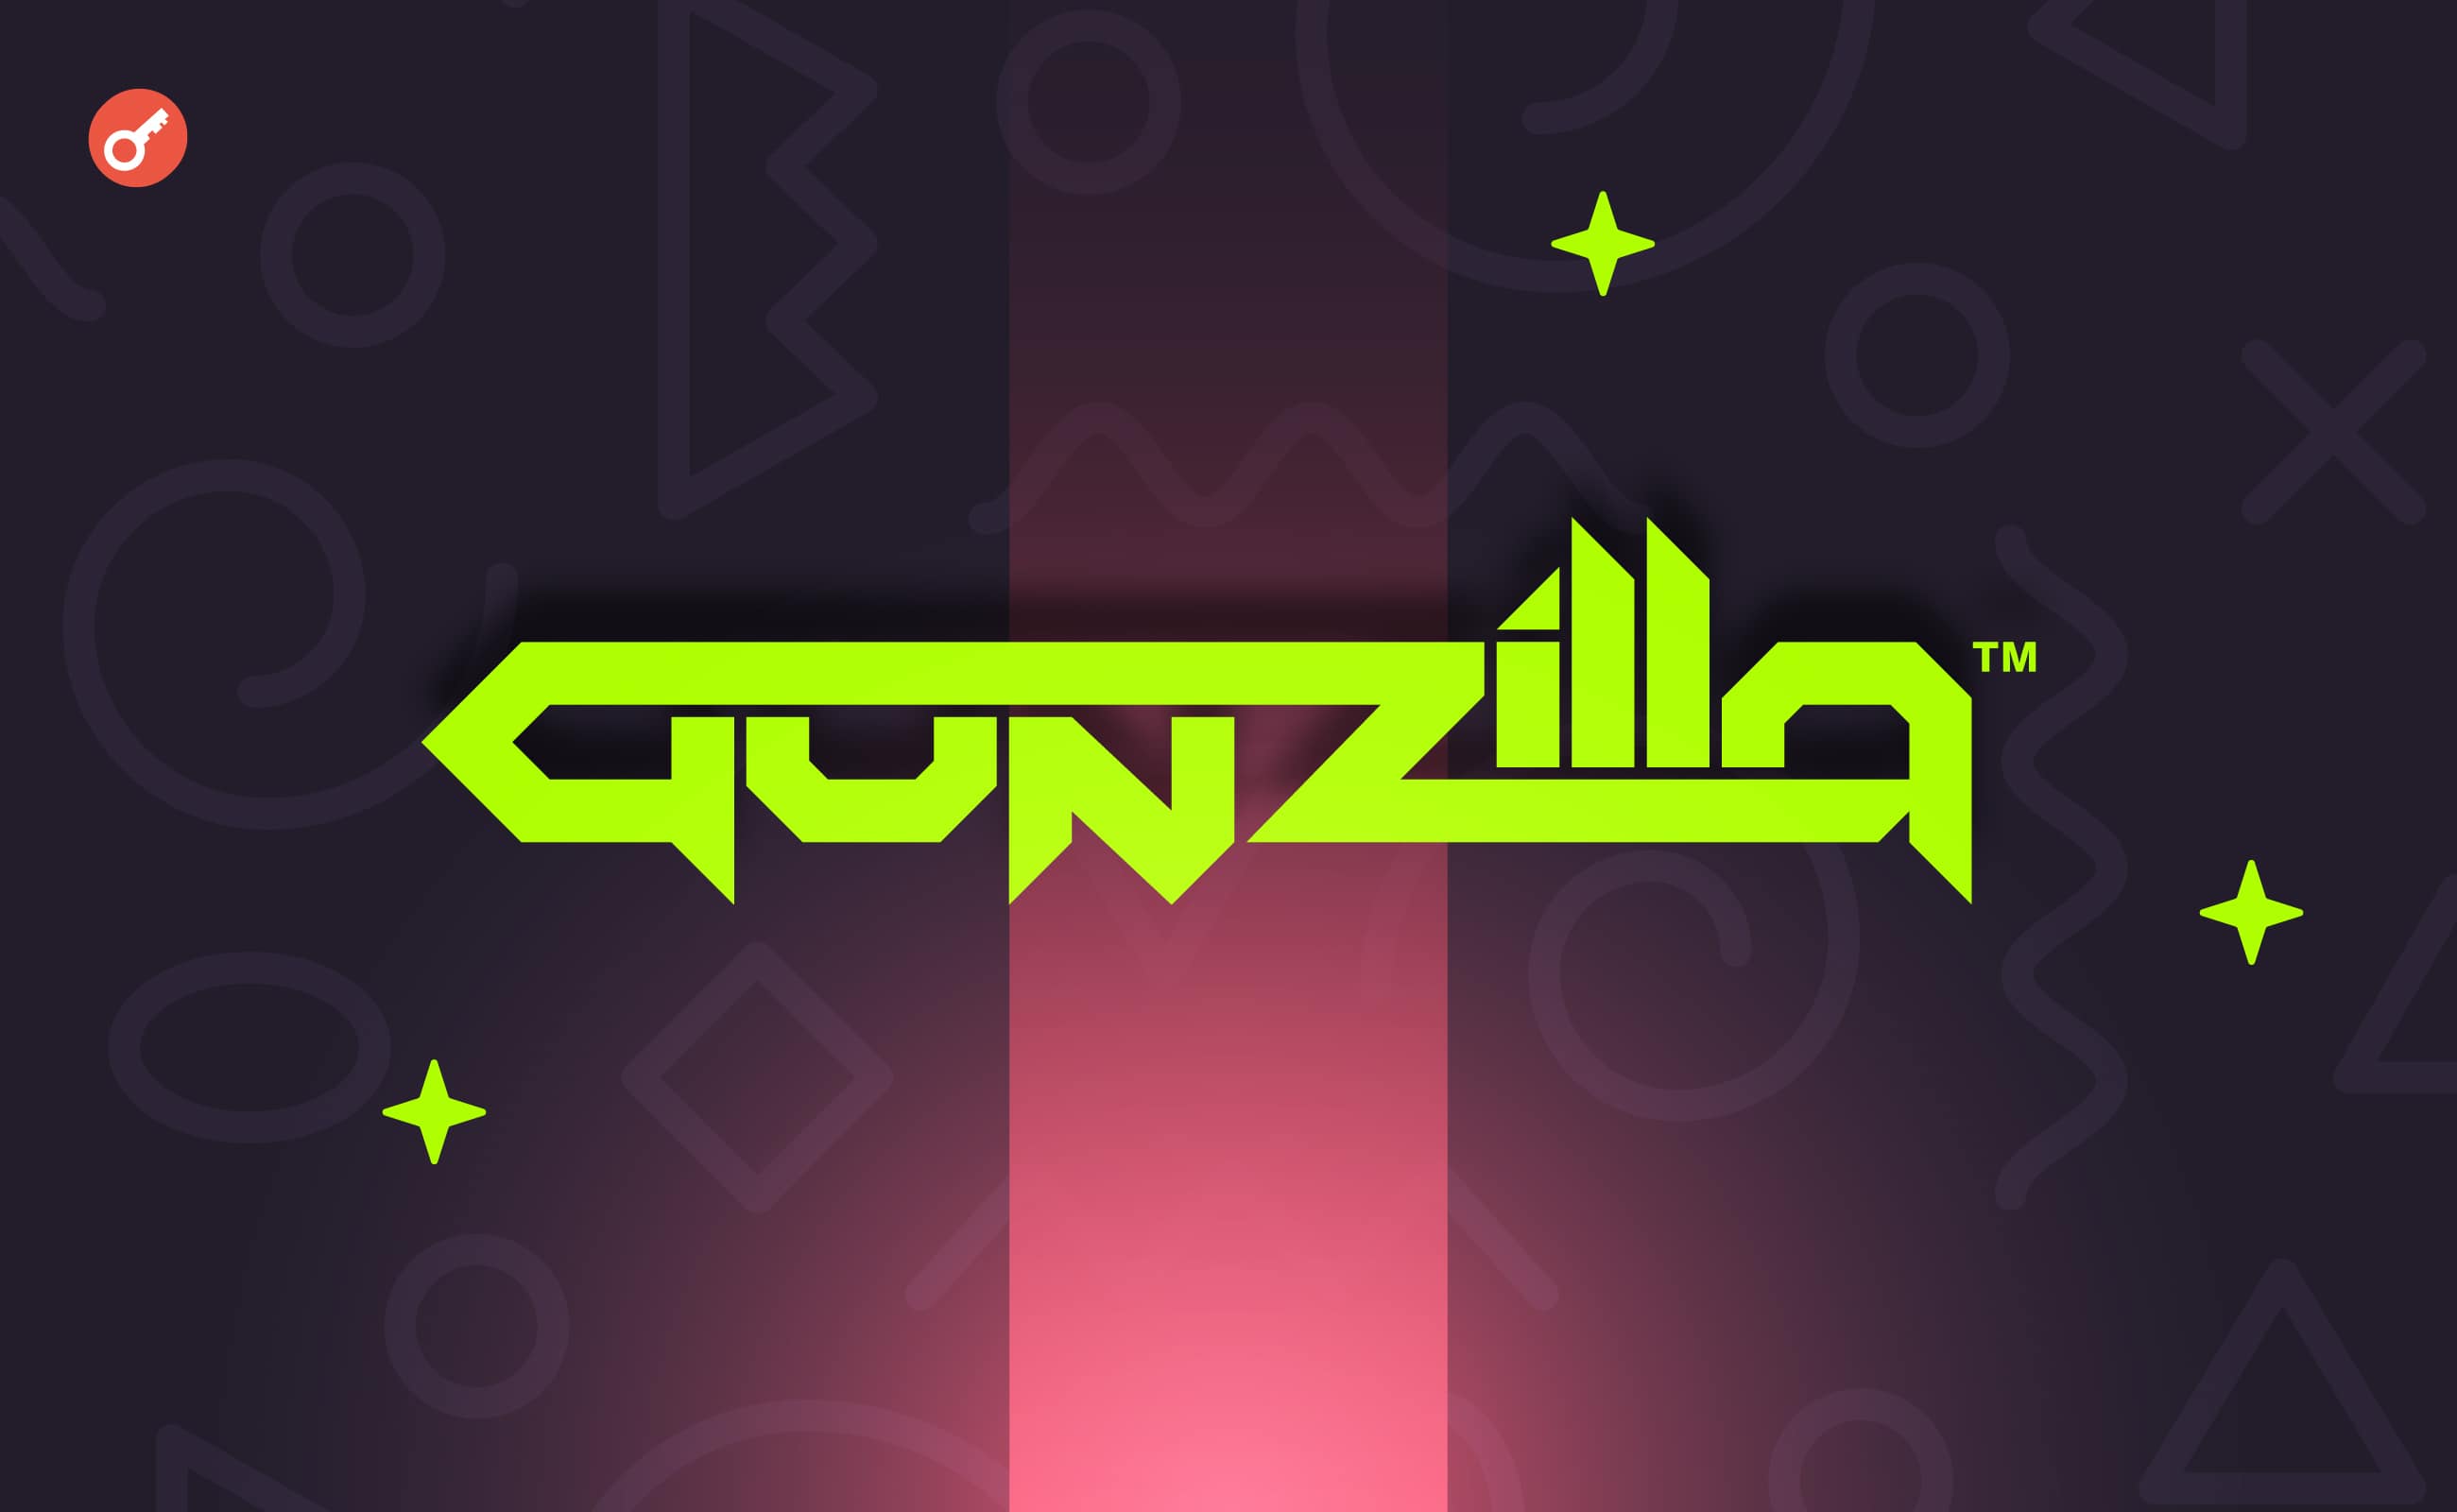 Розробник ігор Gunzilla Games залучив $30 млн інвестицій. Головний колаж новини.